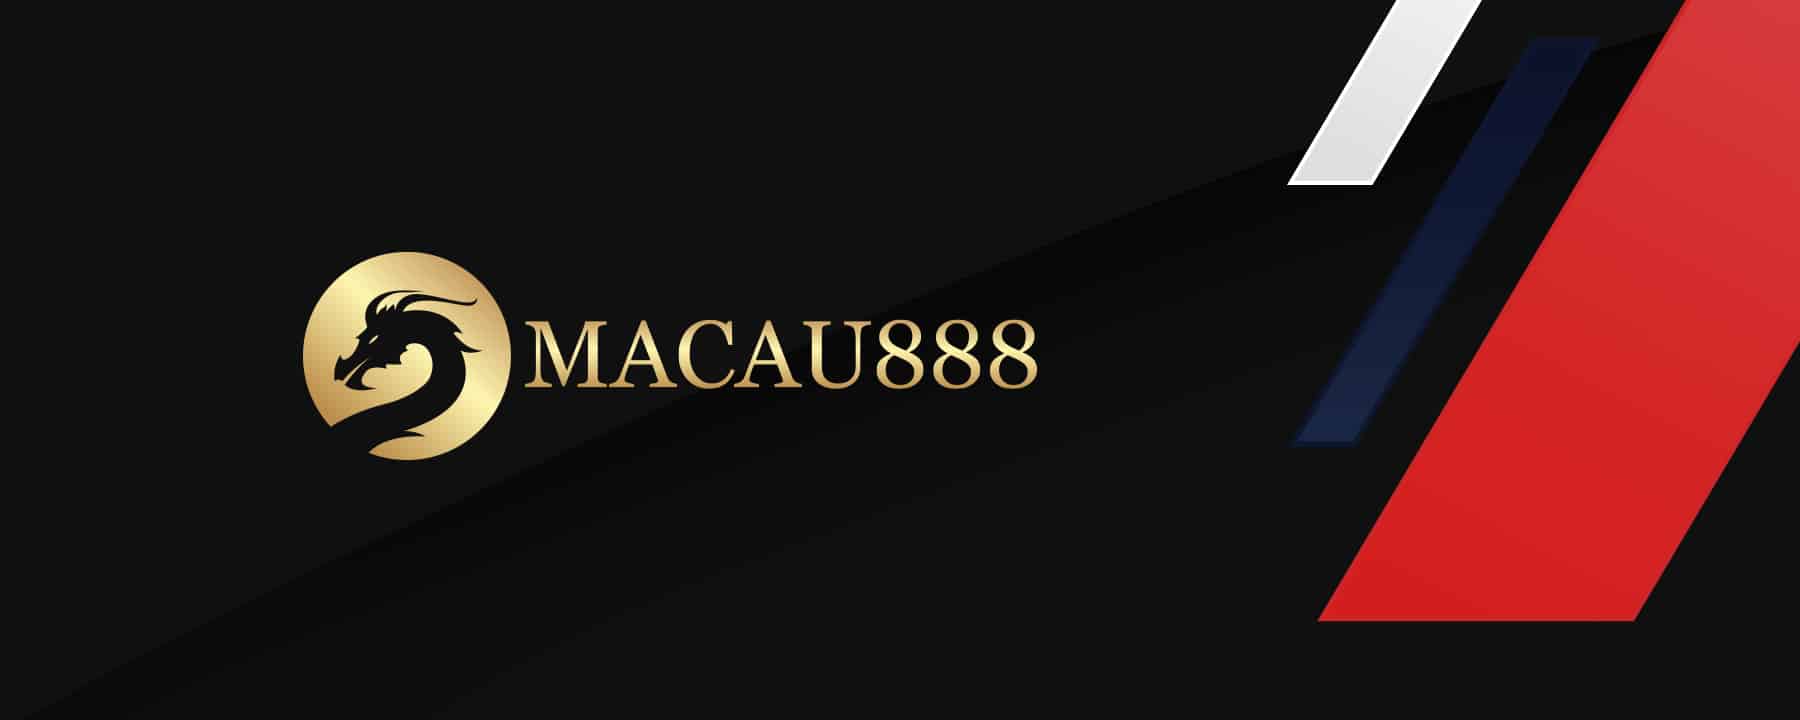 Macau888 ทำเงินง่ายกับเกมไพ่สุดคลาสสิค.jpg